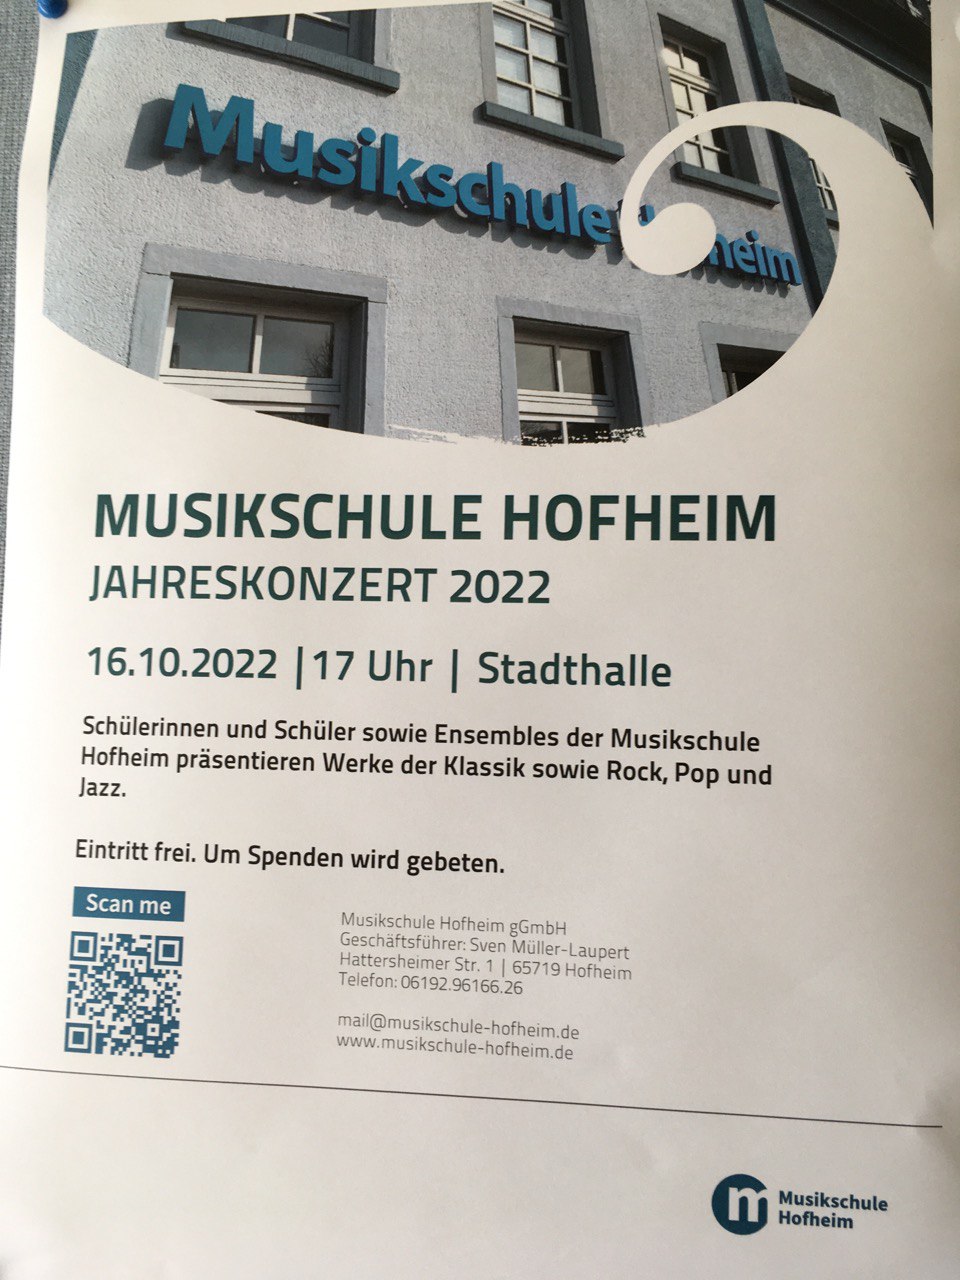 Jahreskonzert 2022, Musikschule Hofheim, 16.10.22, 17 Uhr, Stadthalle